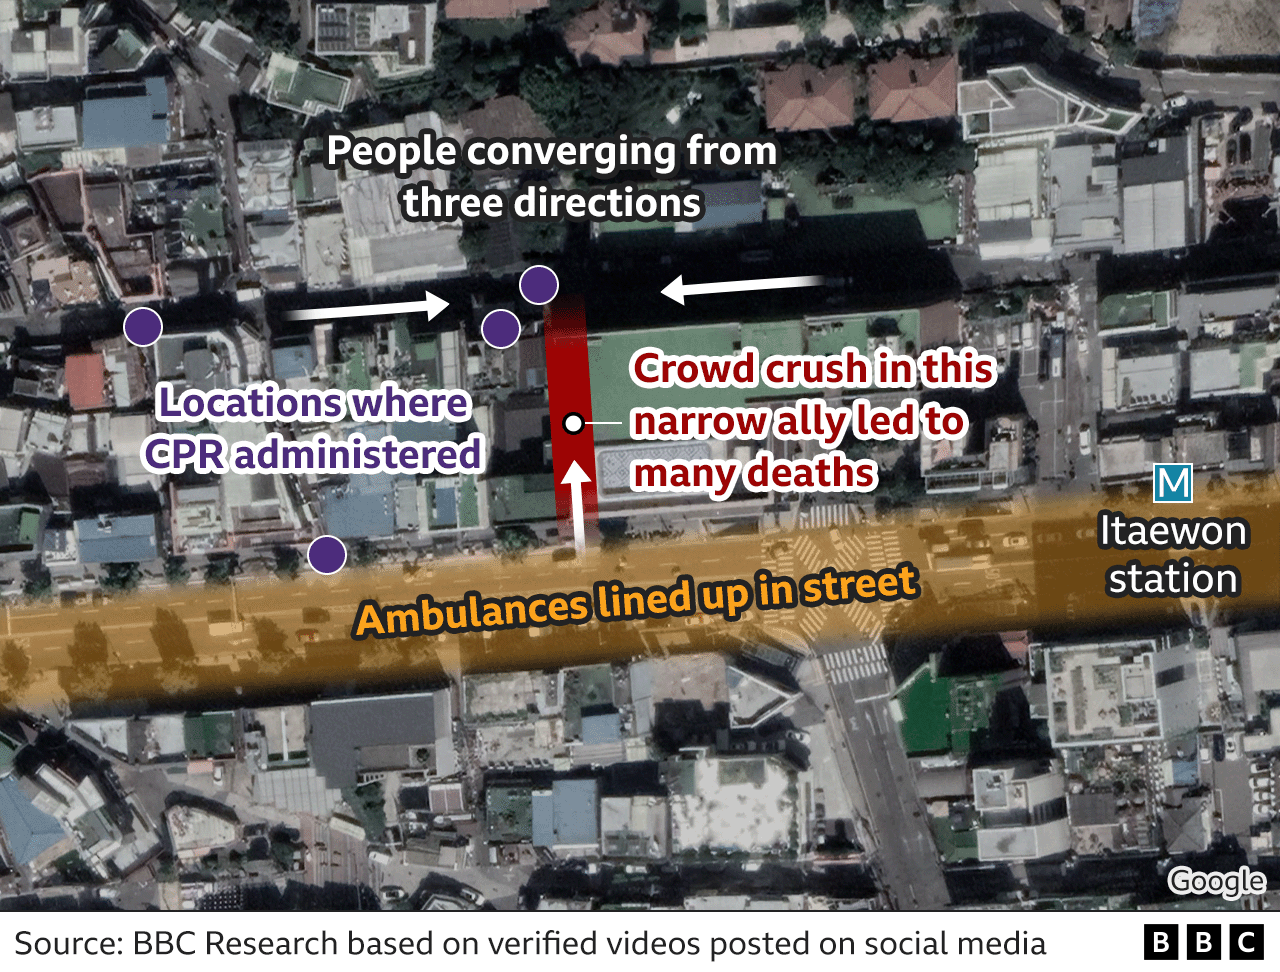 Спутниковый снимок района Итхэвон, на котором видно, как в узком переулке произошла давка